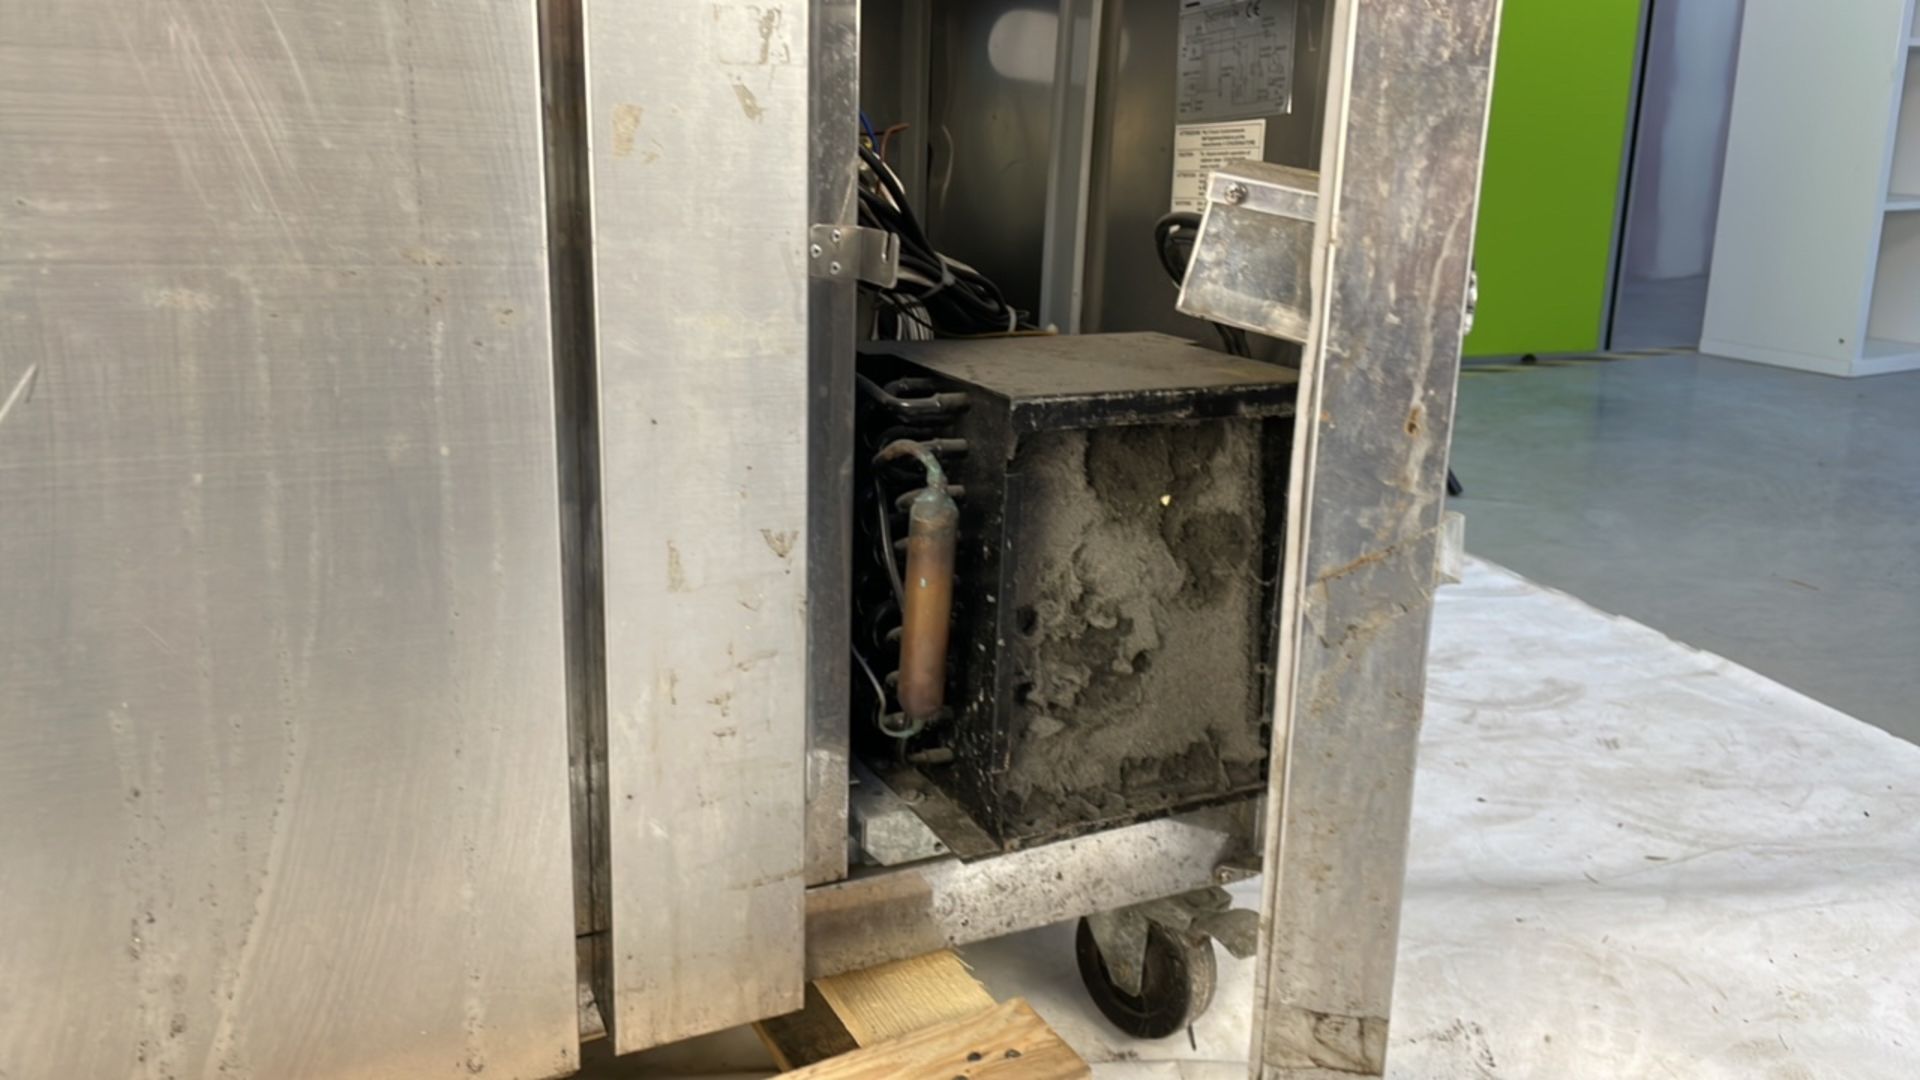 Polar counter gastro refrigeration 2 door - Image 3 of 5